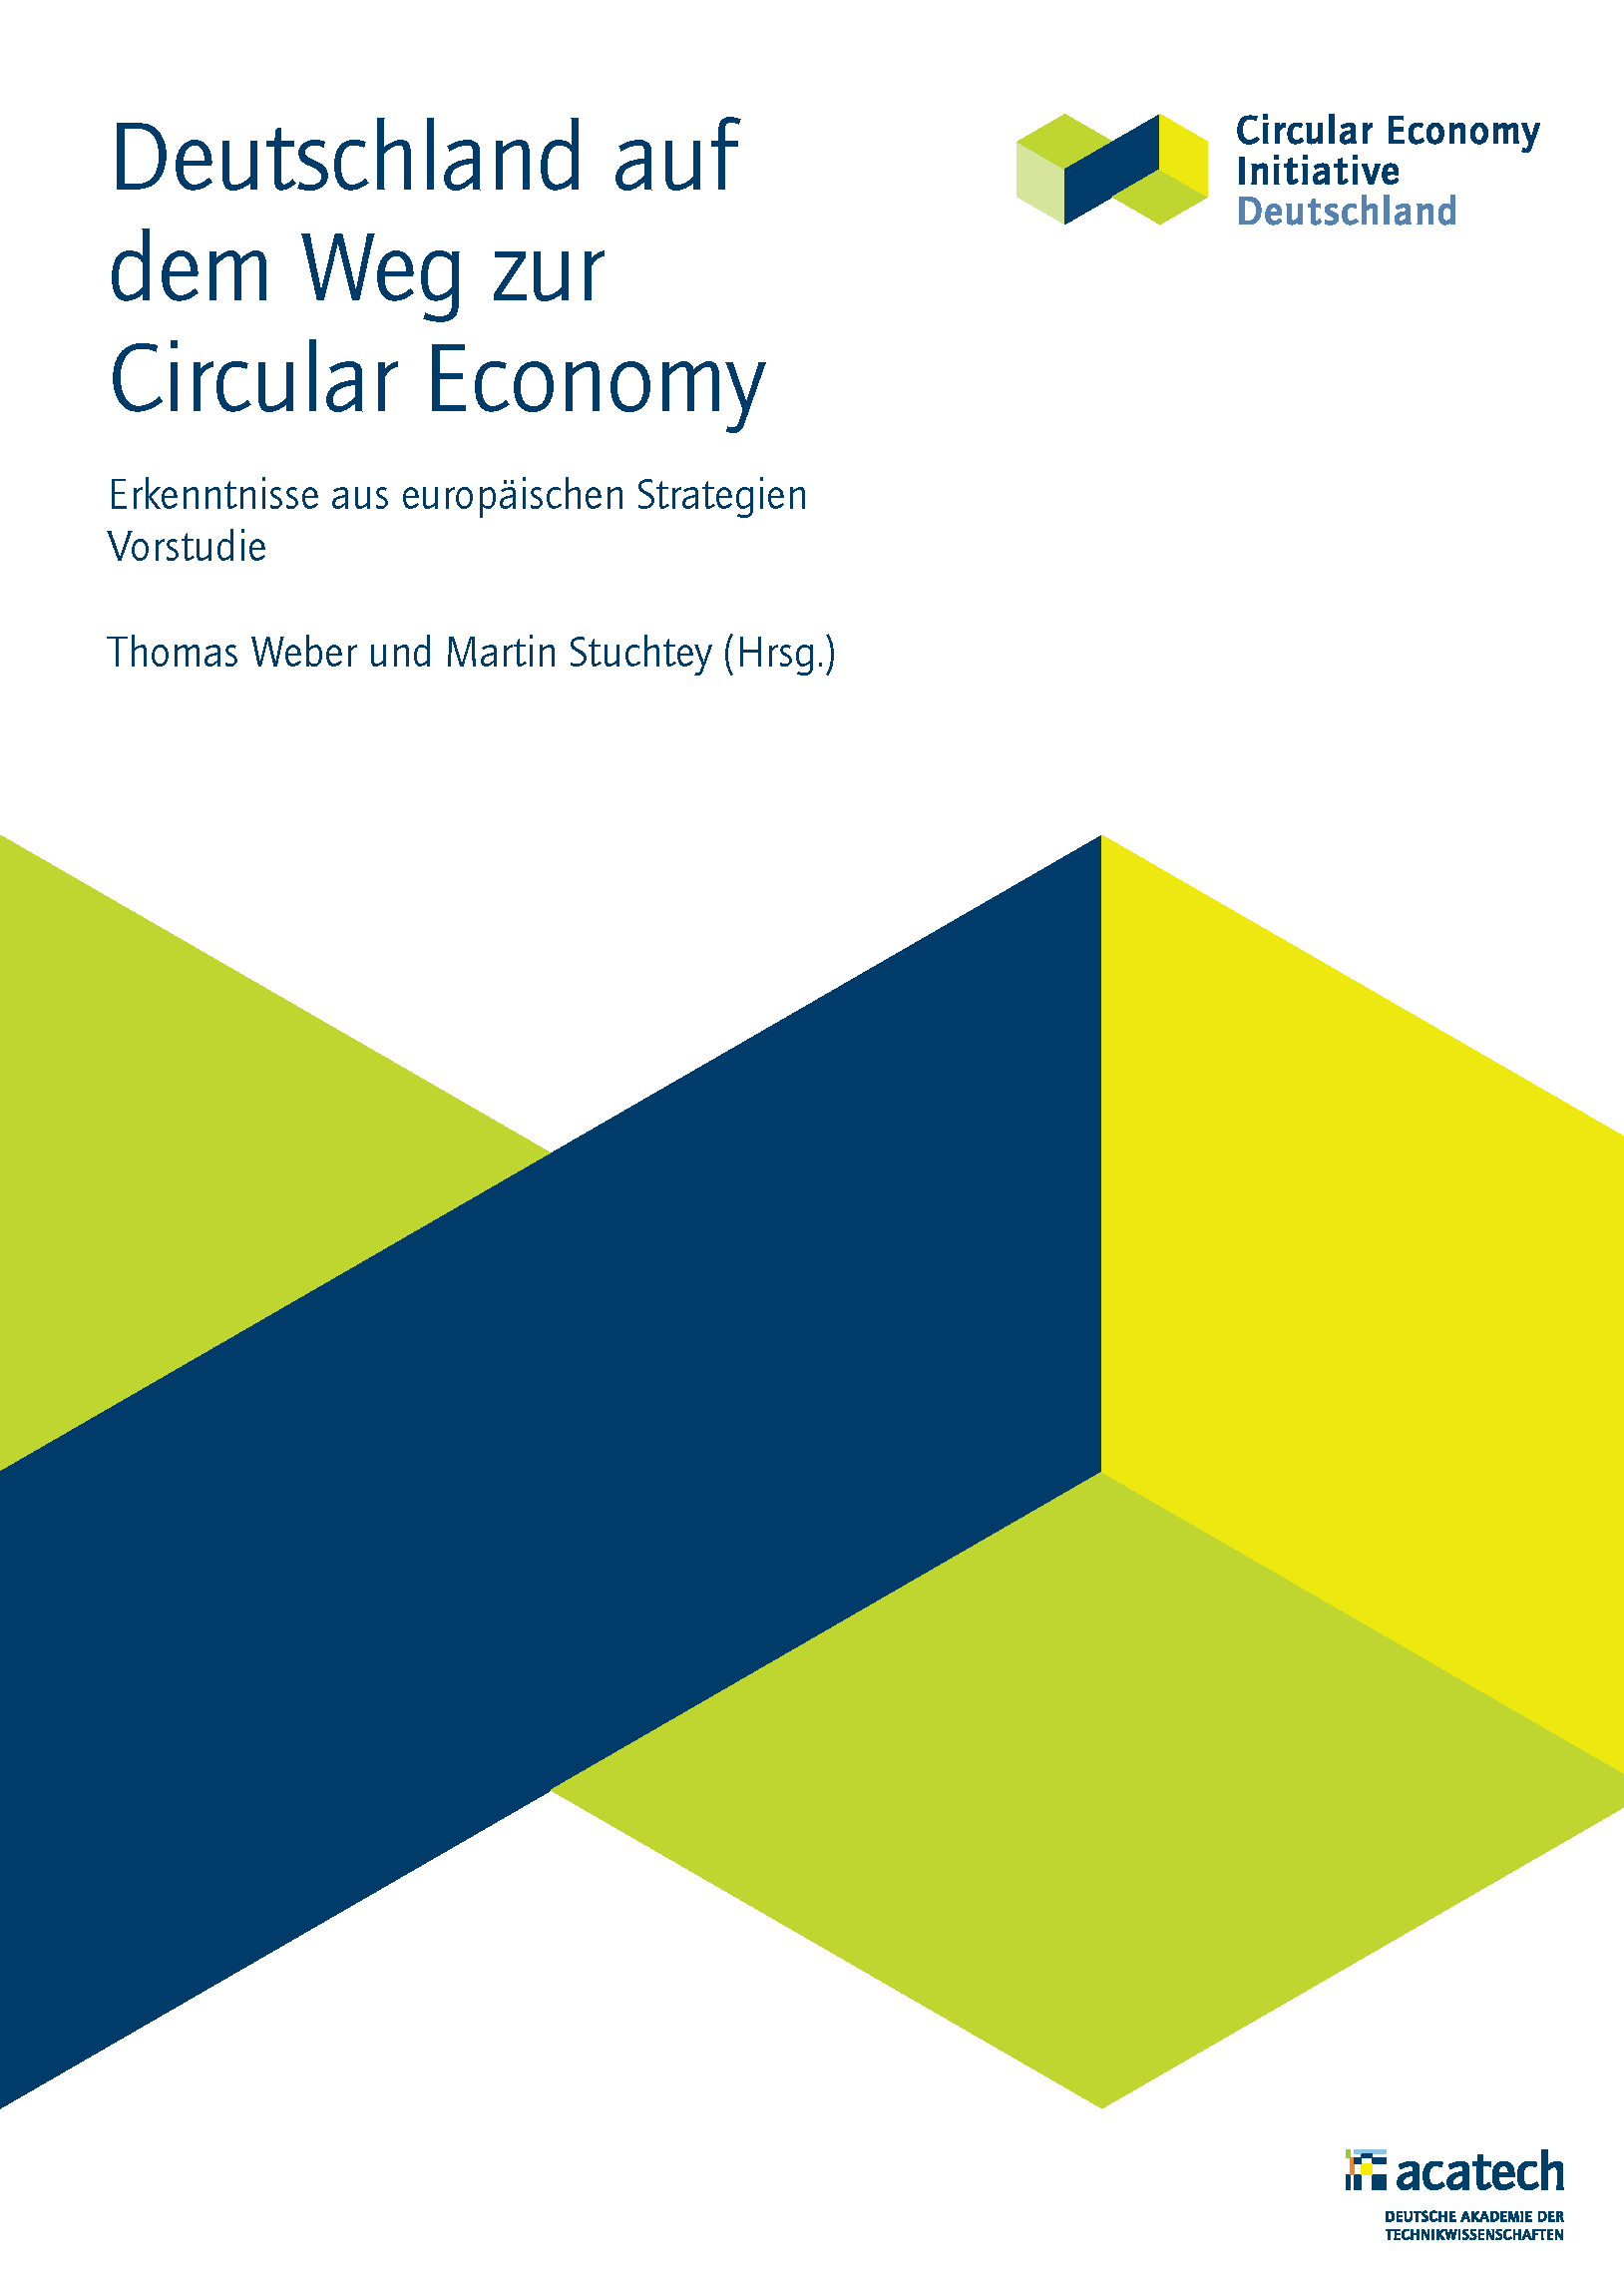 Deutschland auf dem Weg zur Circular Economy - Erkenntnisse aus europäischen Strategien (Vorstudie)